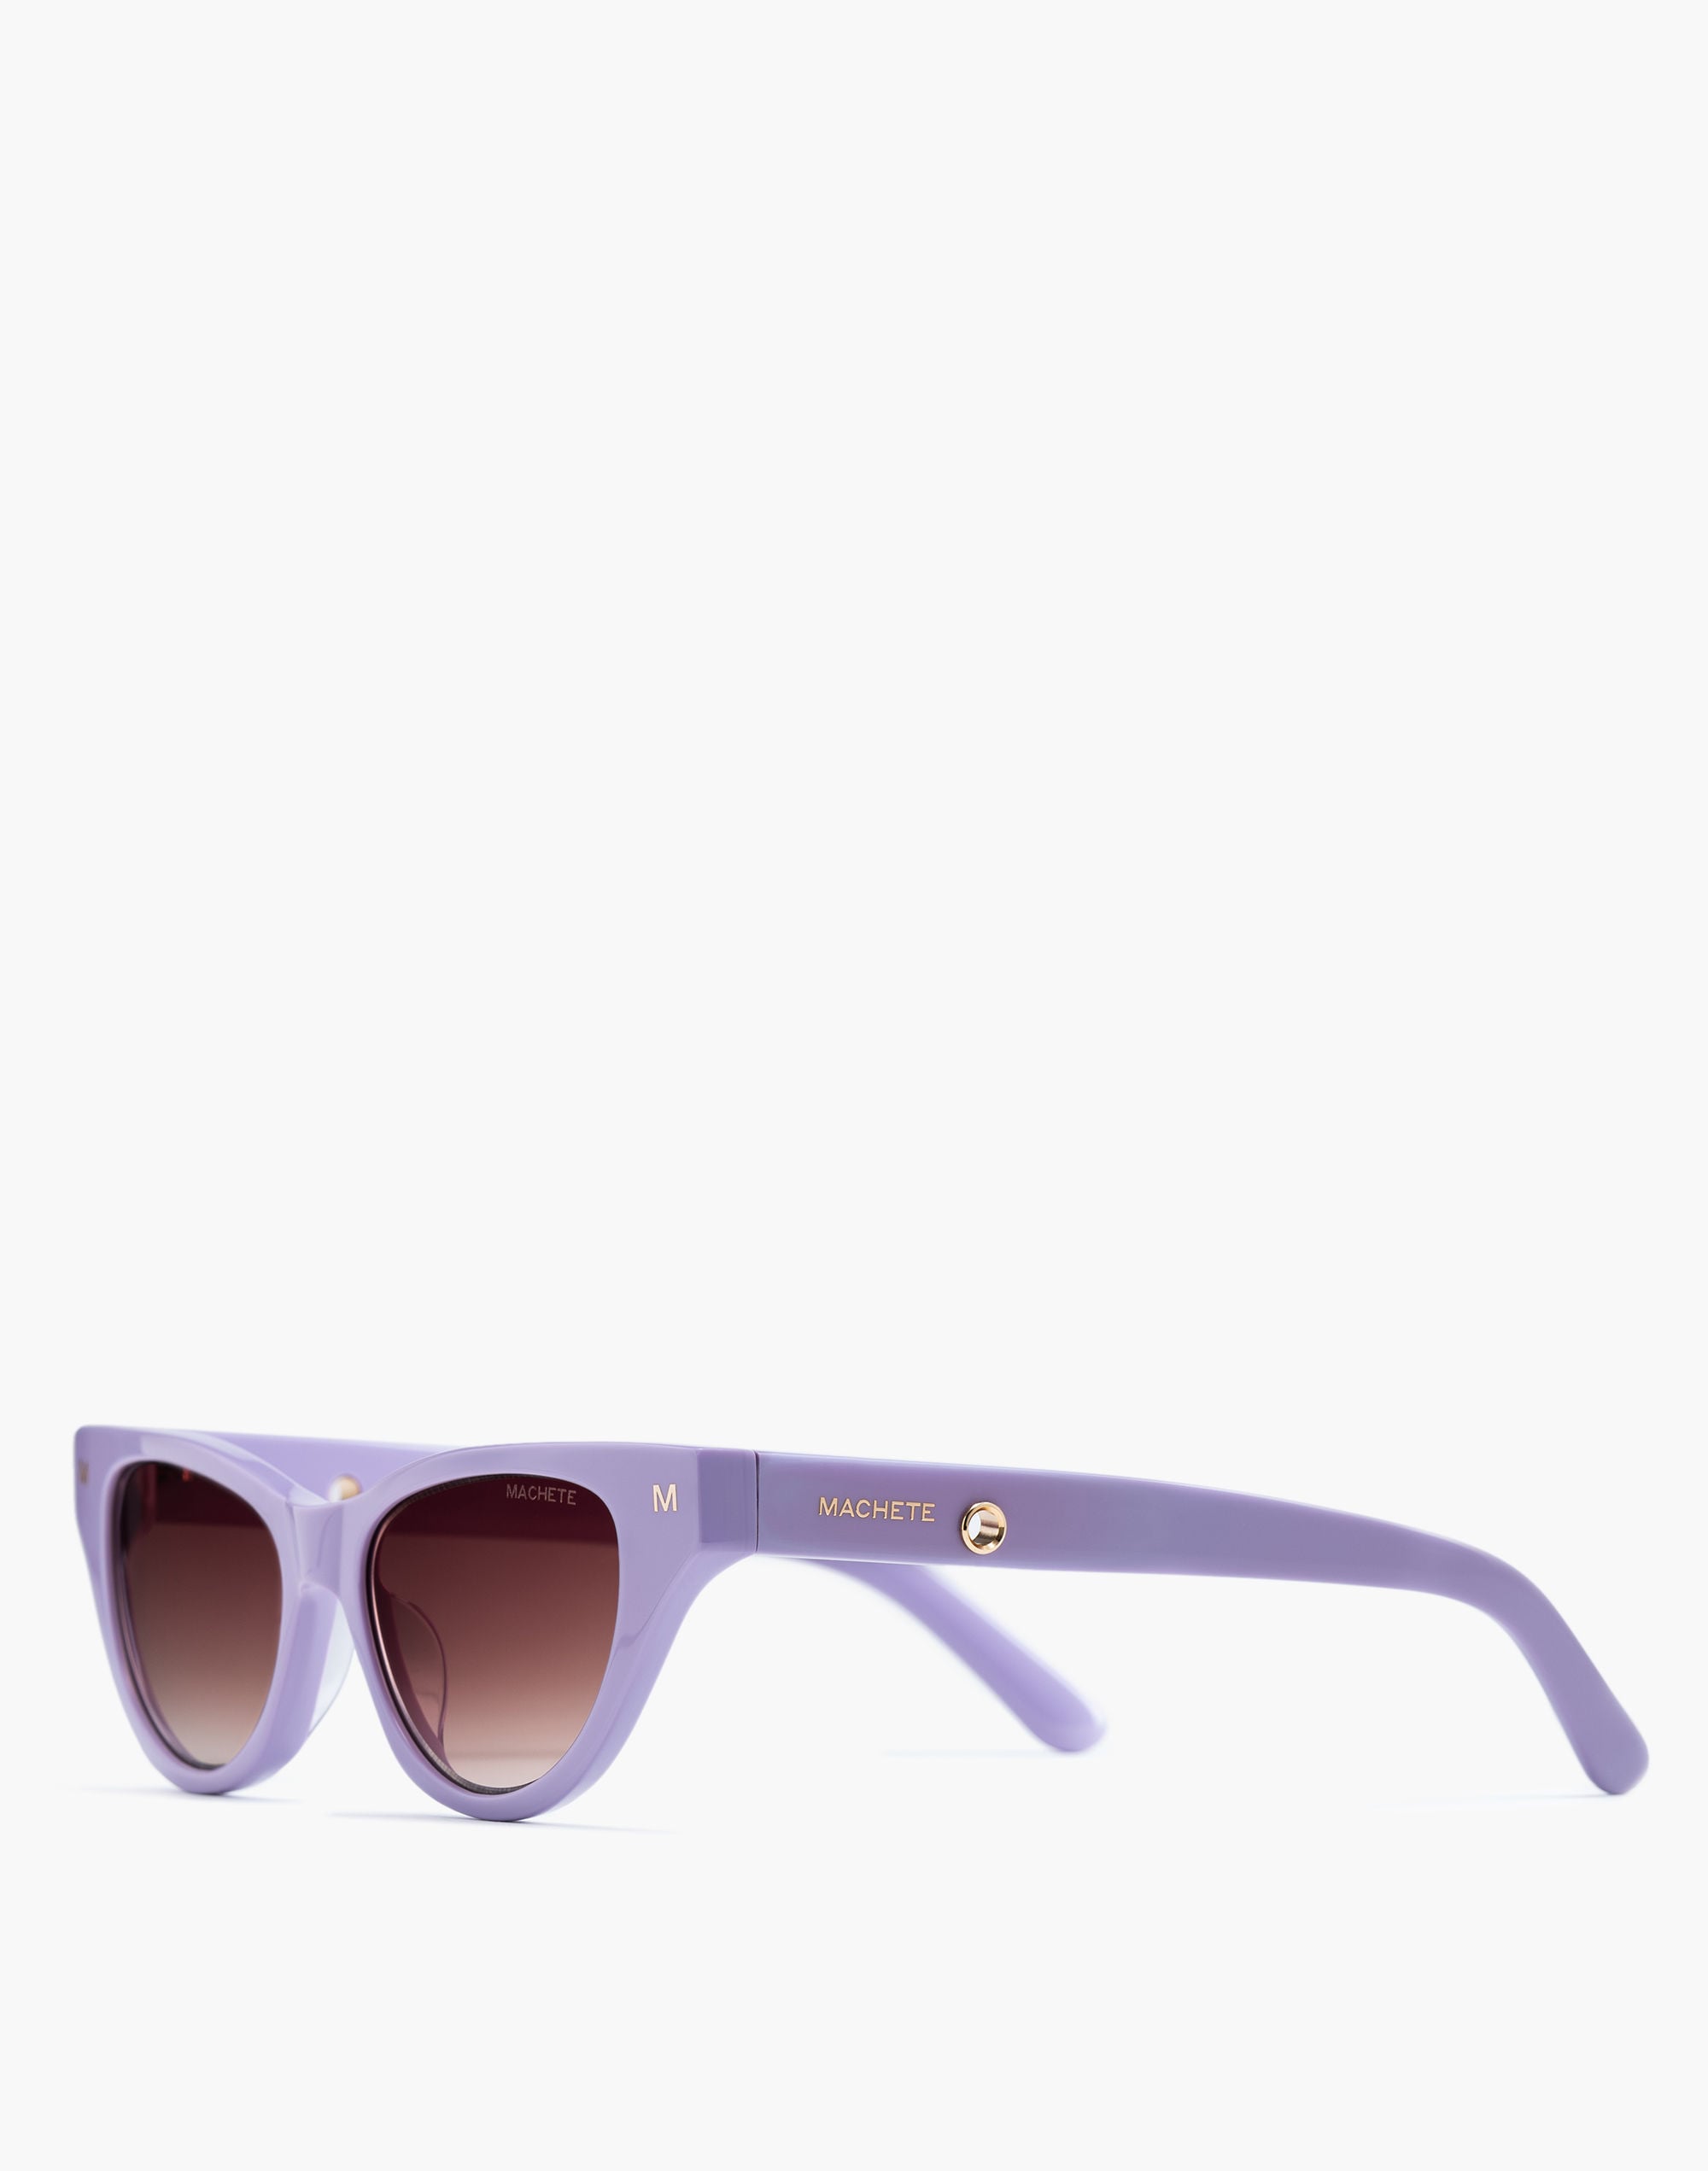 Mw Machete Suzy Sunglasses In Purple